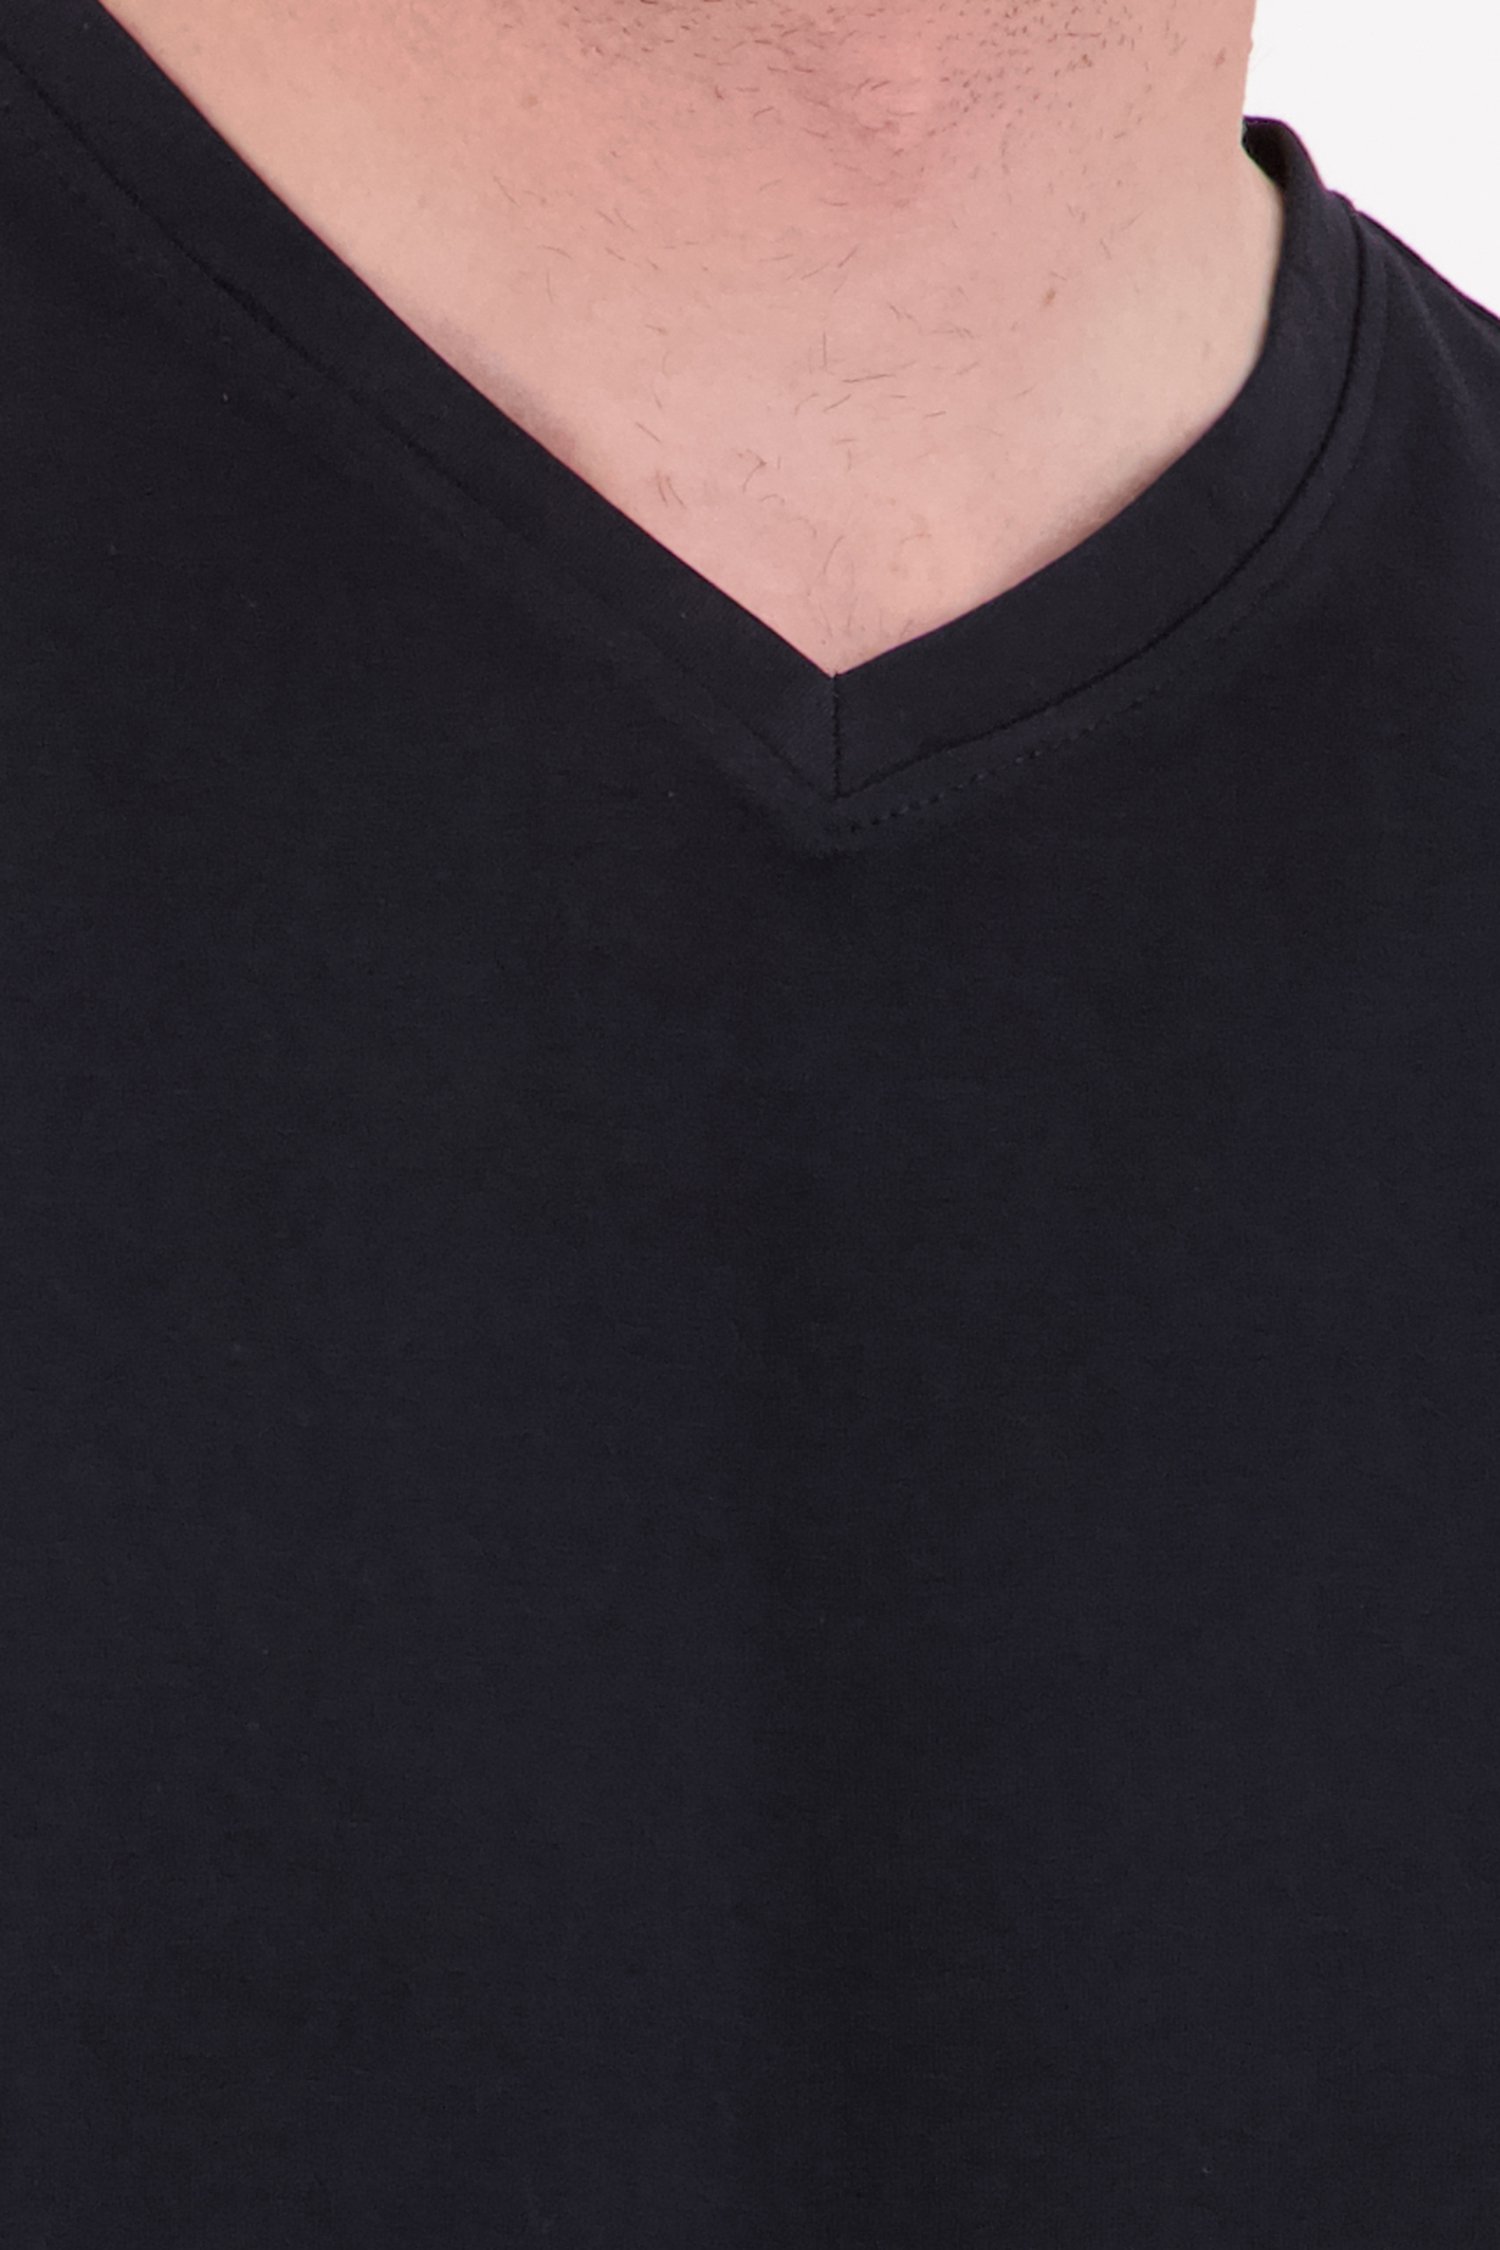 Zwart katoenen T-shirt met V-hals van Ravøtt voor Heren